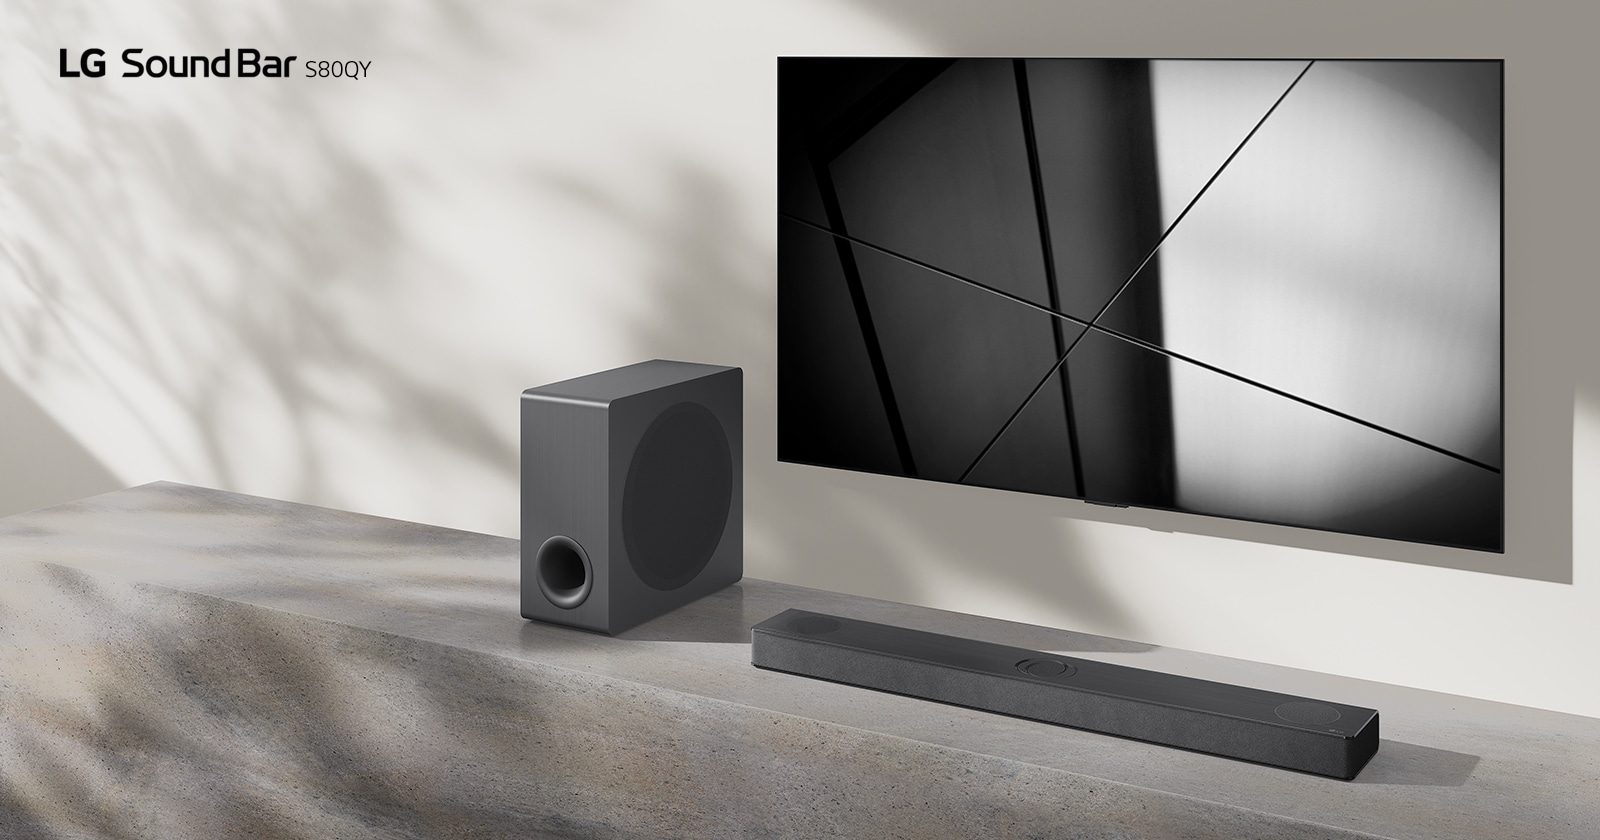 LG soundbar S80QY ja LG televiisor on paigutatud koos elutuppa. Teler näitab mustvalget pilti.